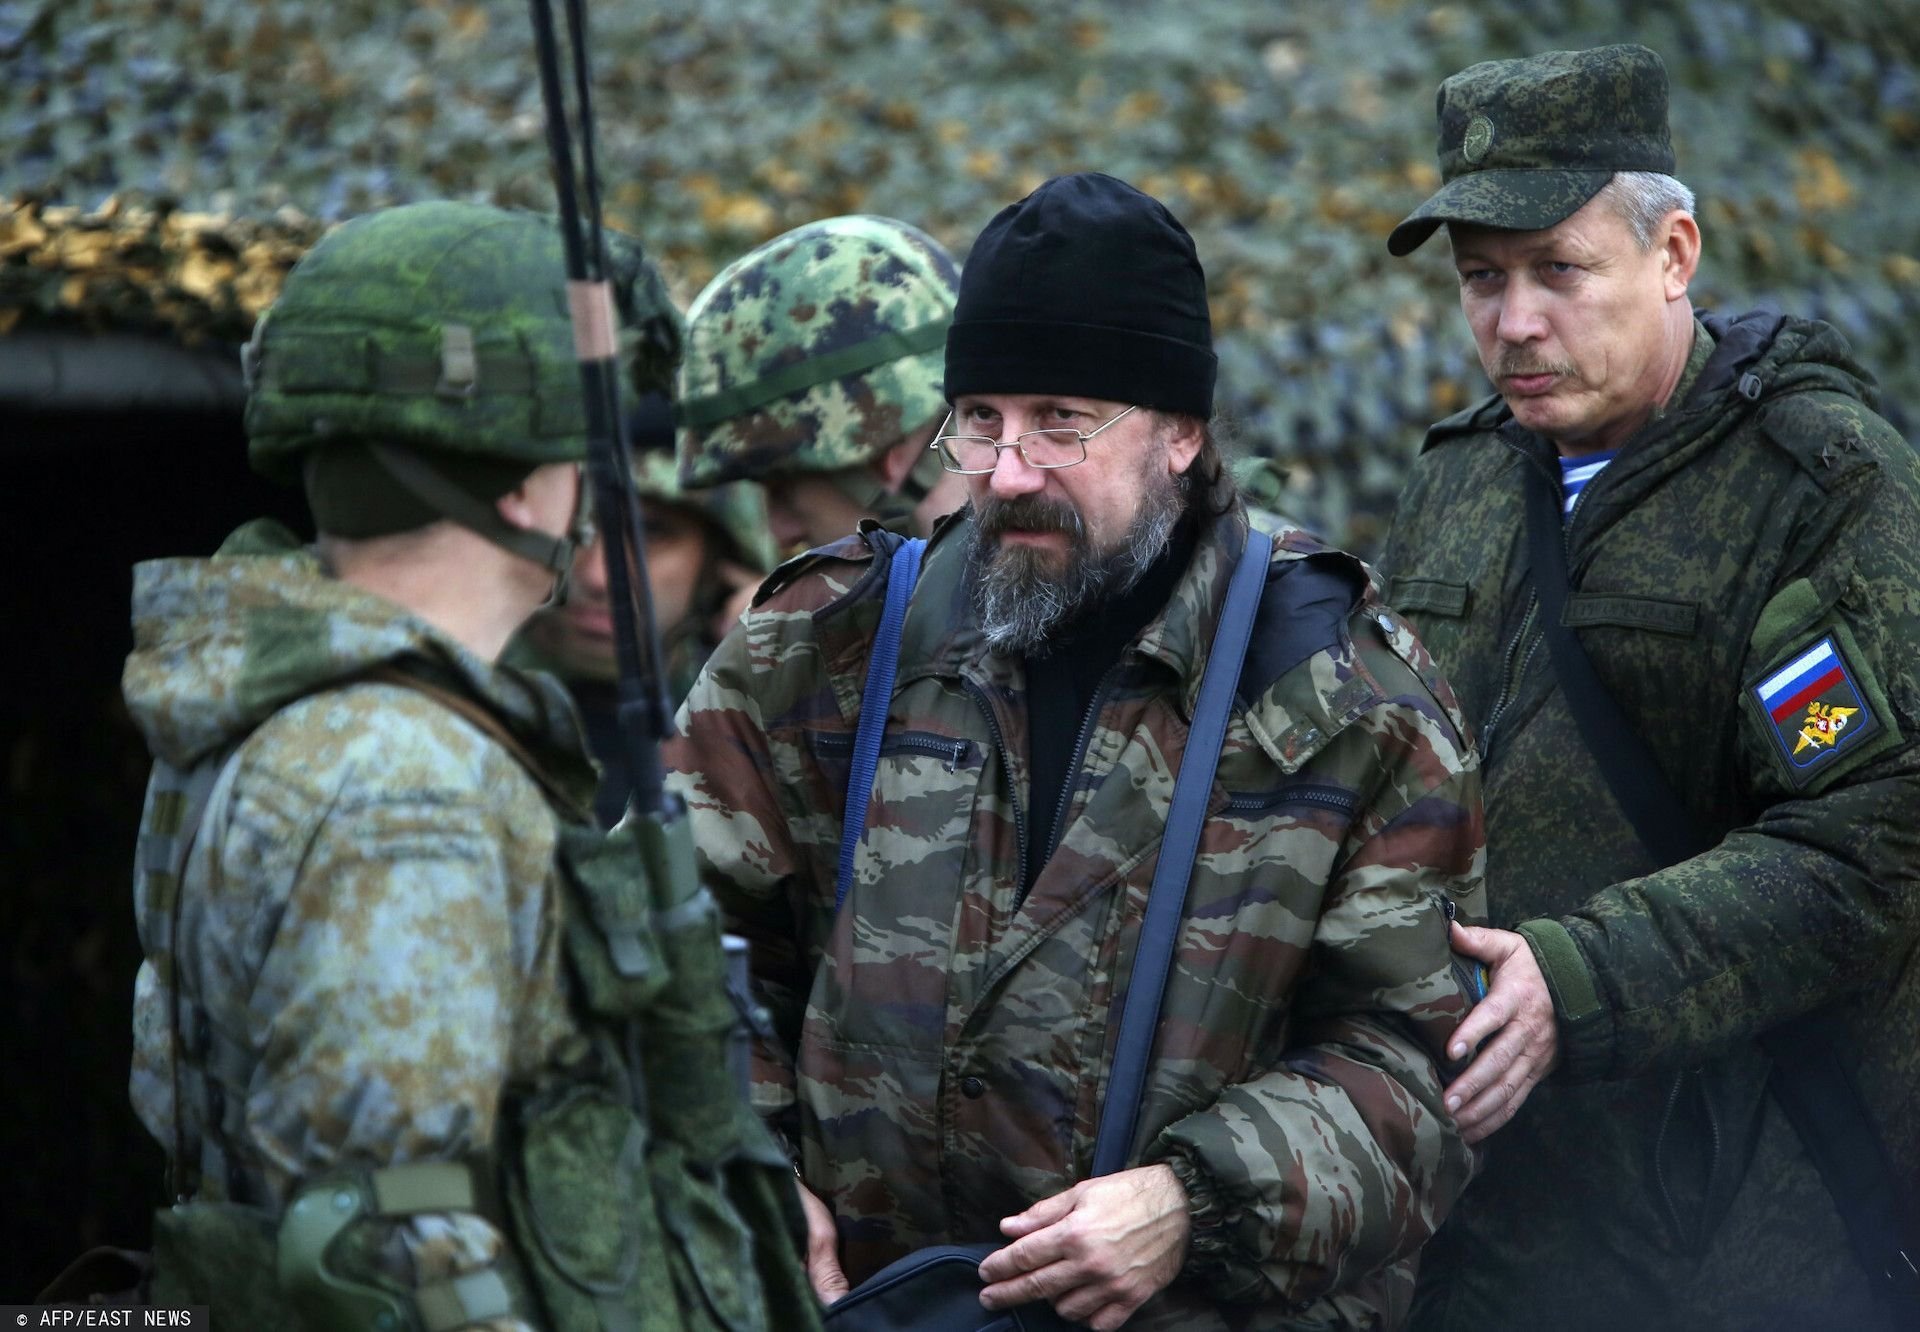 Ujawniono rozmowy rosyjskich żołnierzy, Władimir Putin nie będzie zadowolony